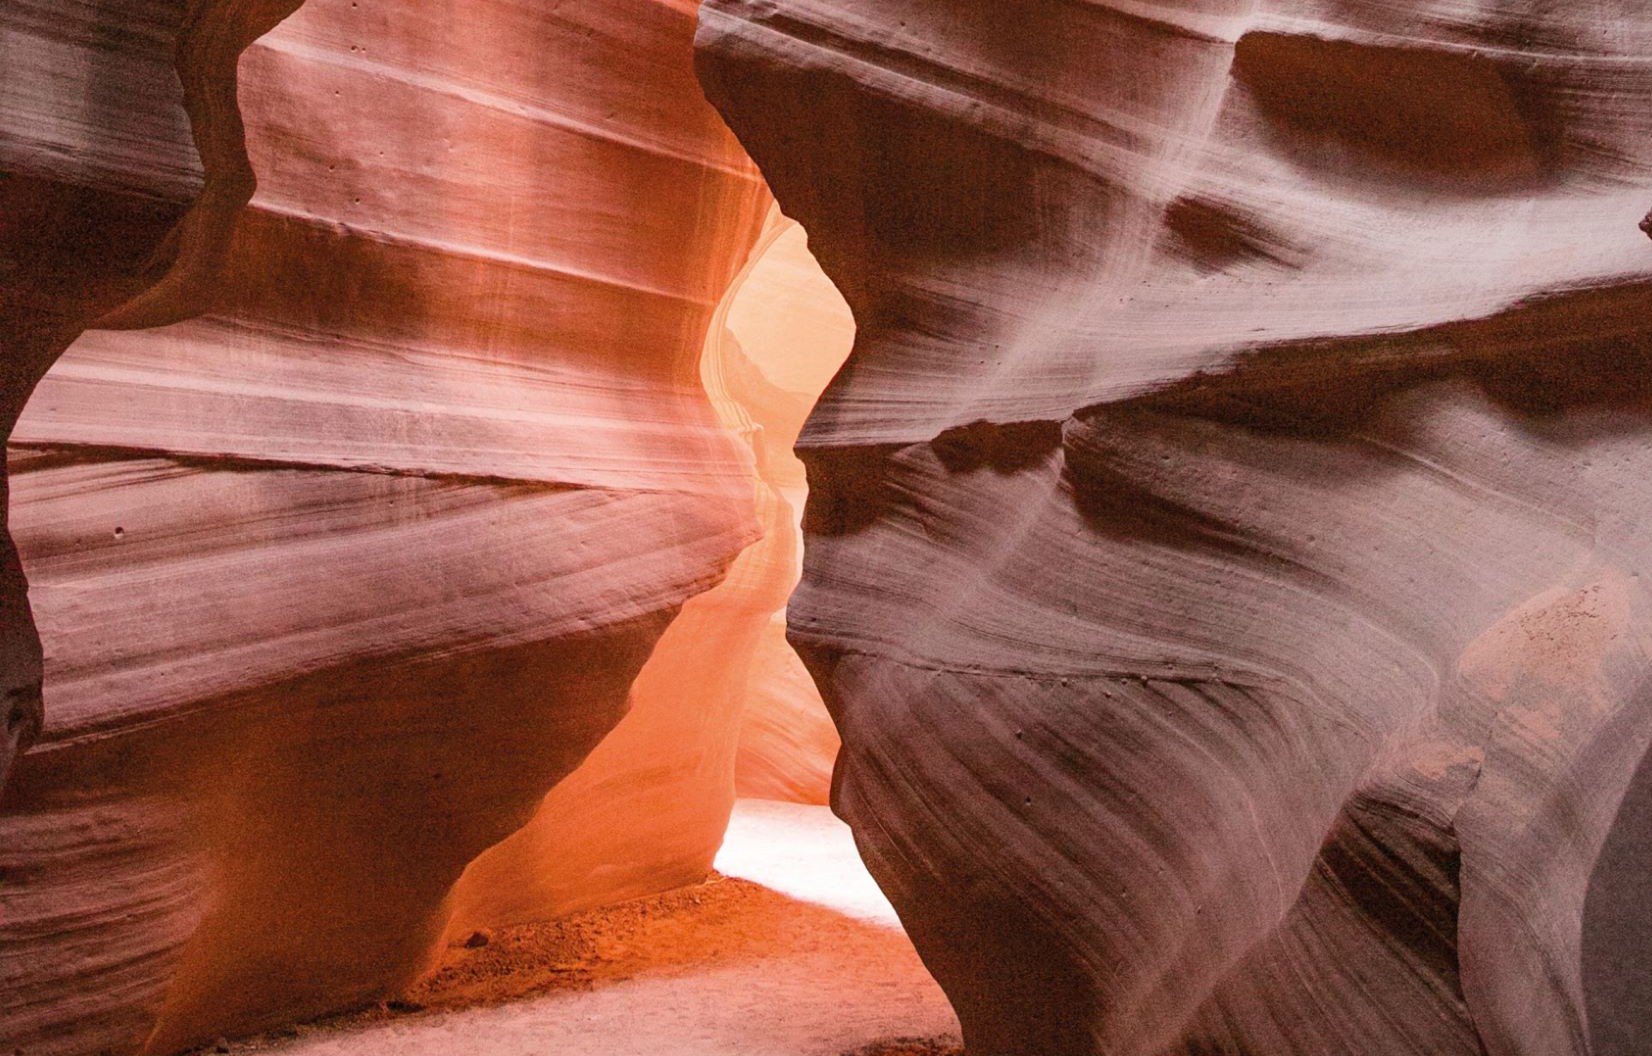 狹縫型紅色砂岩峽谷是猶他州南部著名的地質景觀之一。